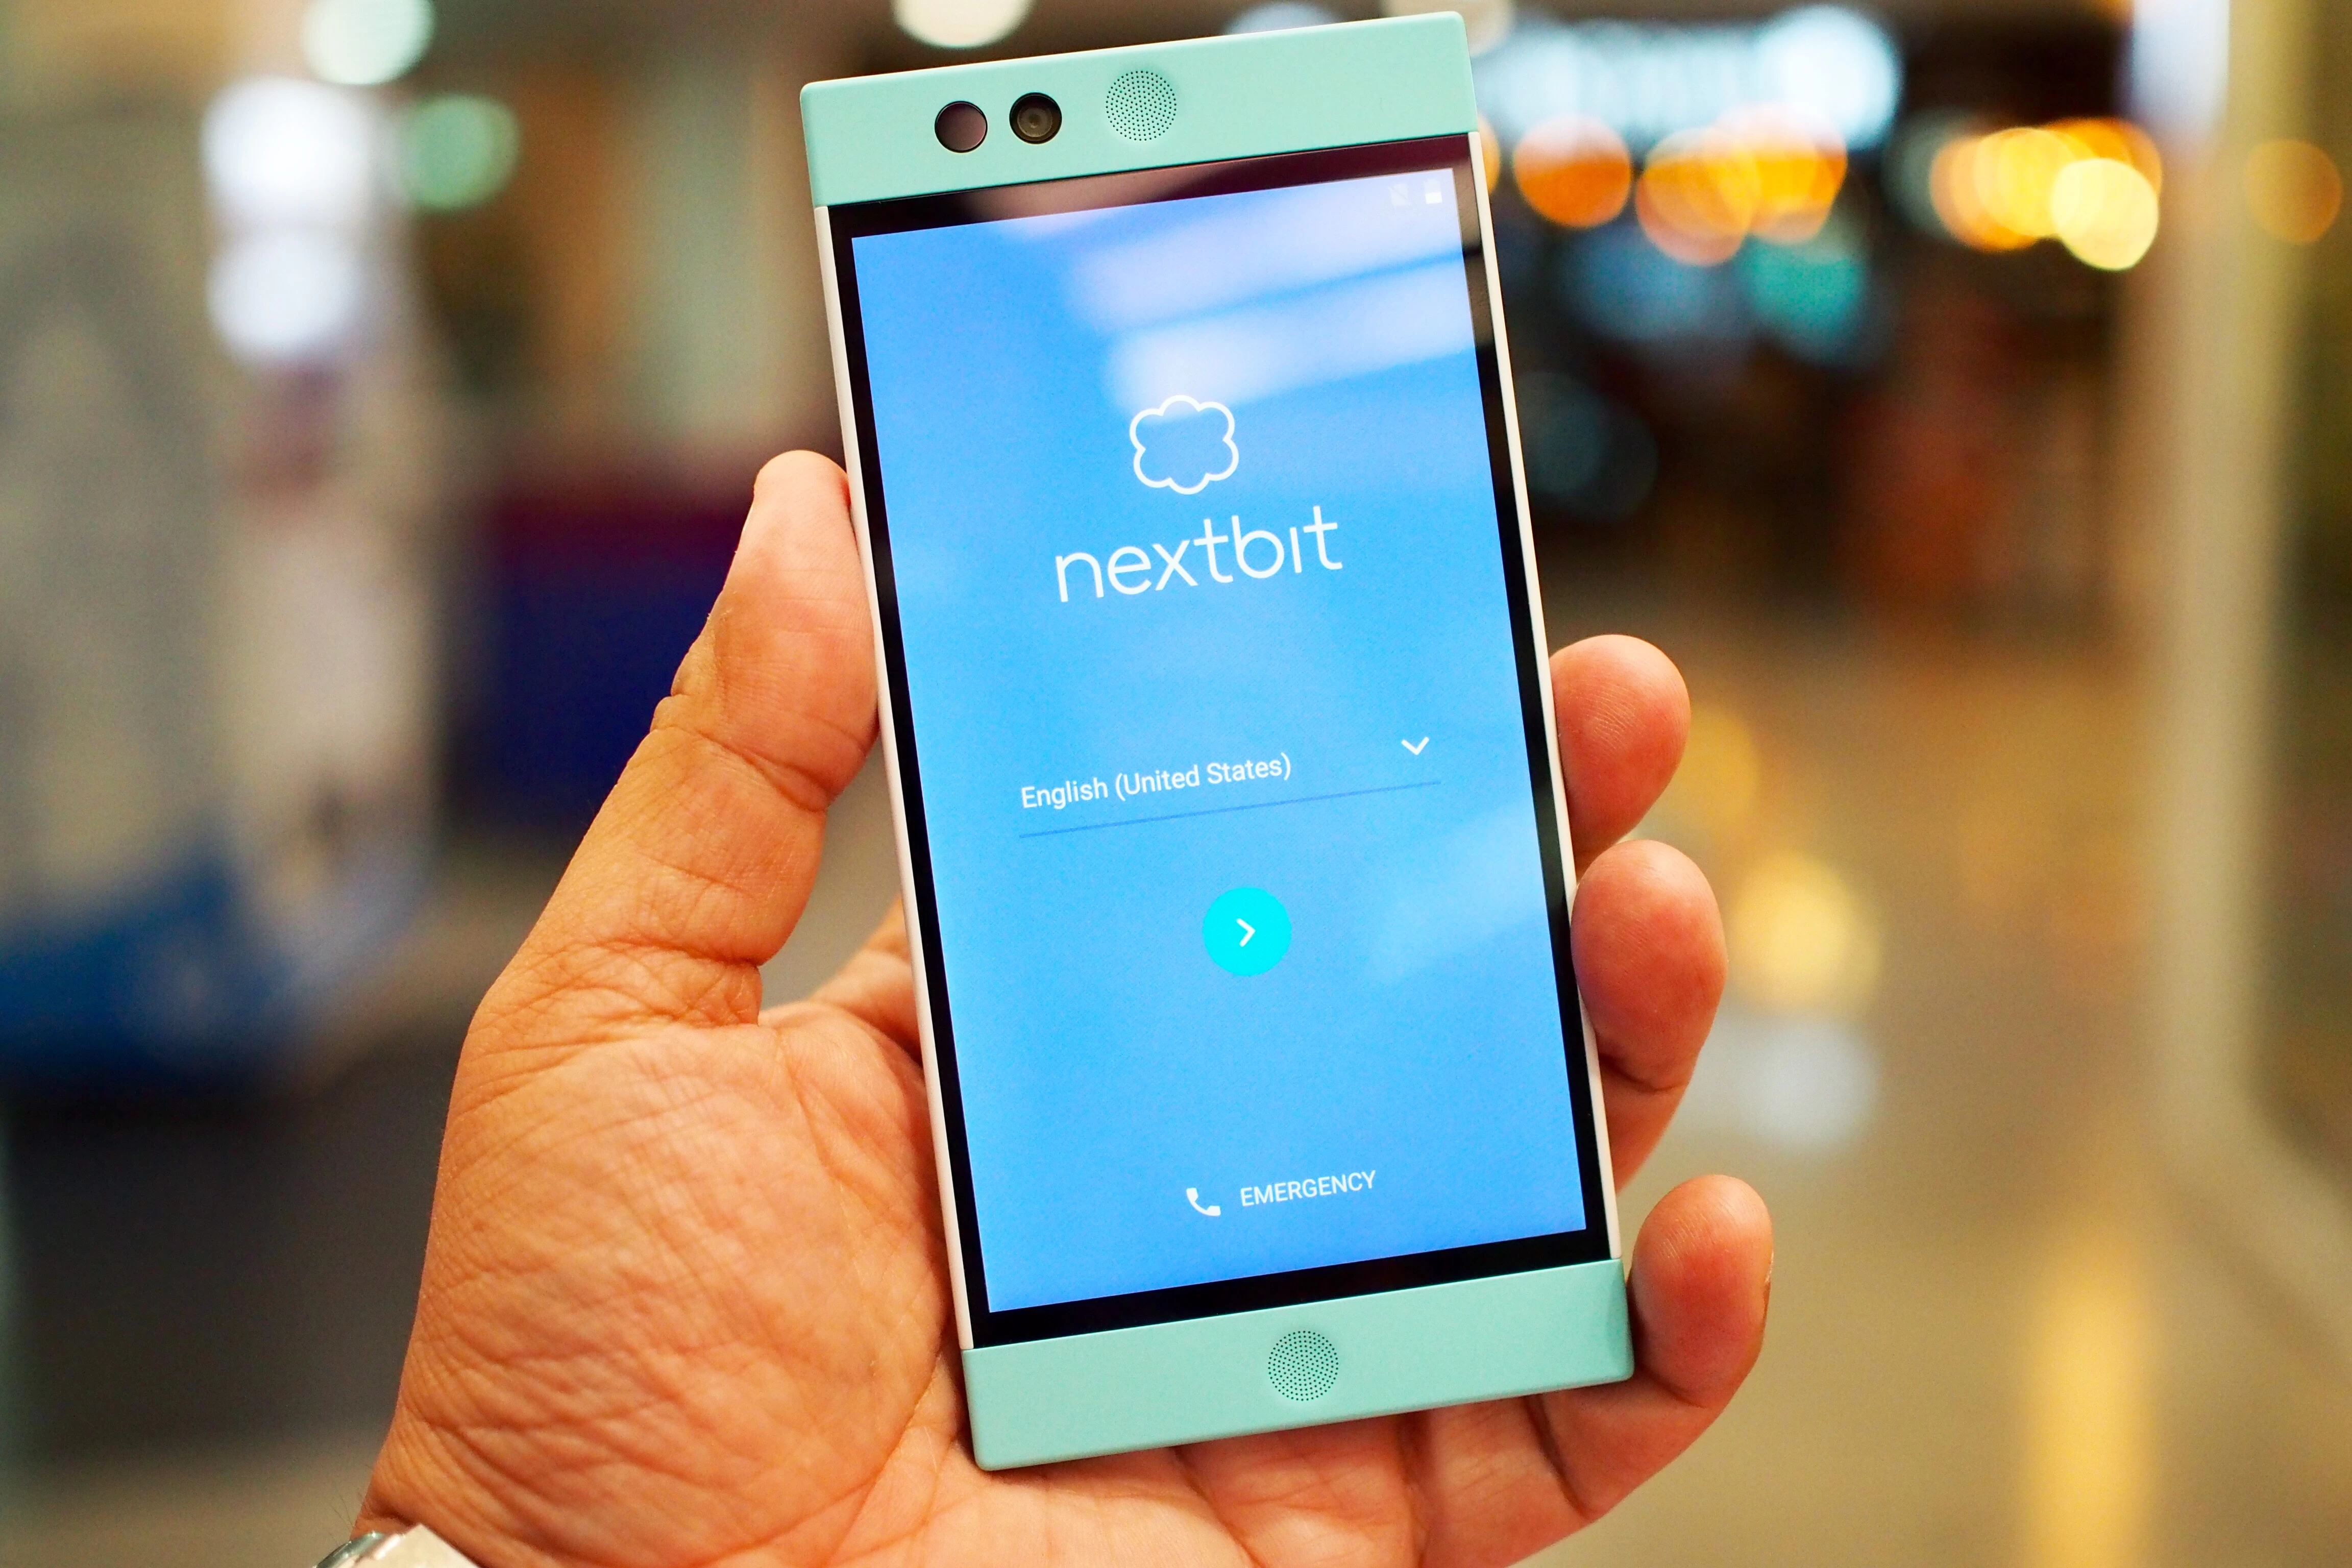 img 1218 1 | Nextbit | พรีวิว nextbit Robin สมาร์ทโฟน Android แนวคิดใหม่ ใช้พื้นที่ออนไลน์ให้เกิดประโยชน์สูงสุด โดยไม่ขัดกับการใช้งานที่สะดวก